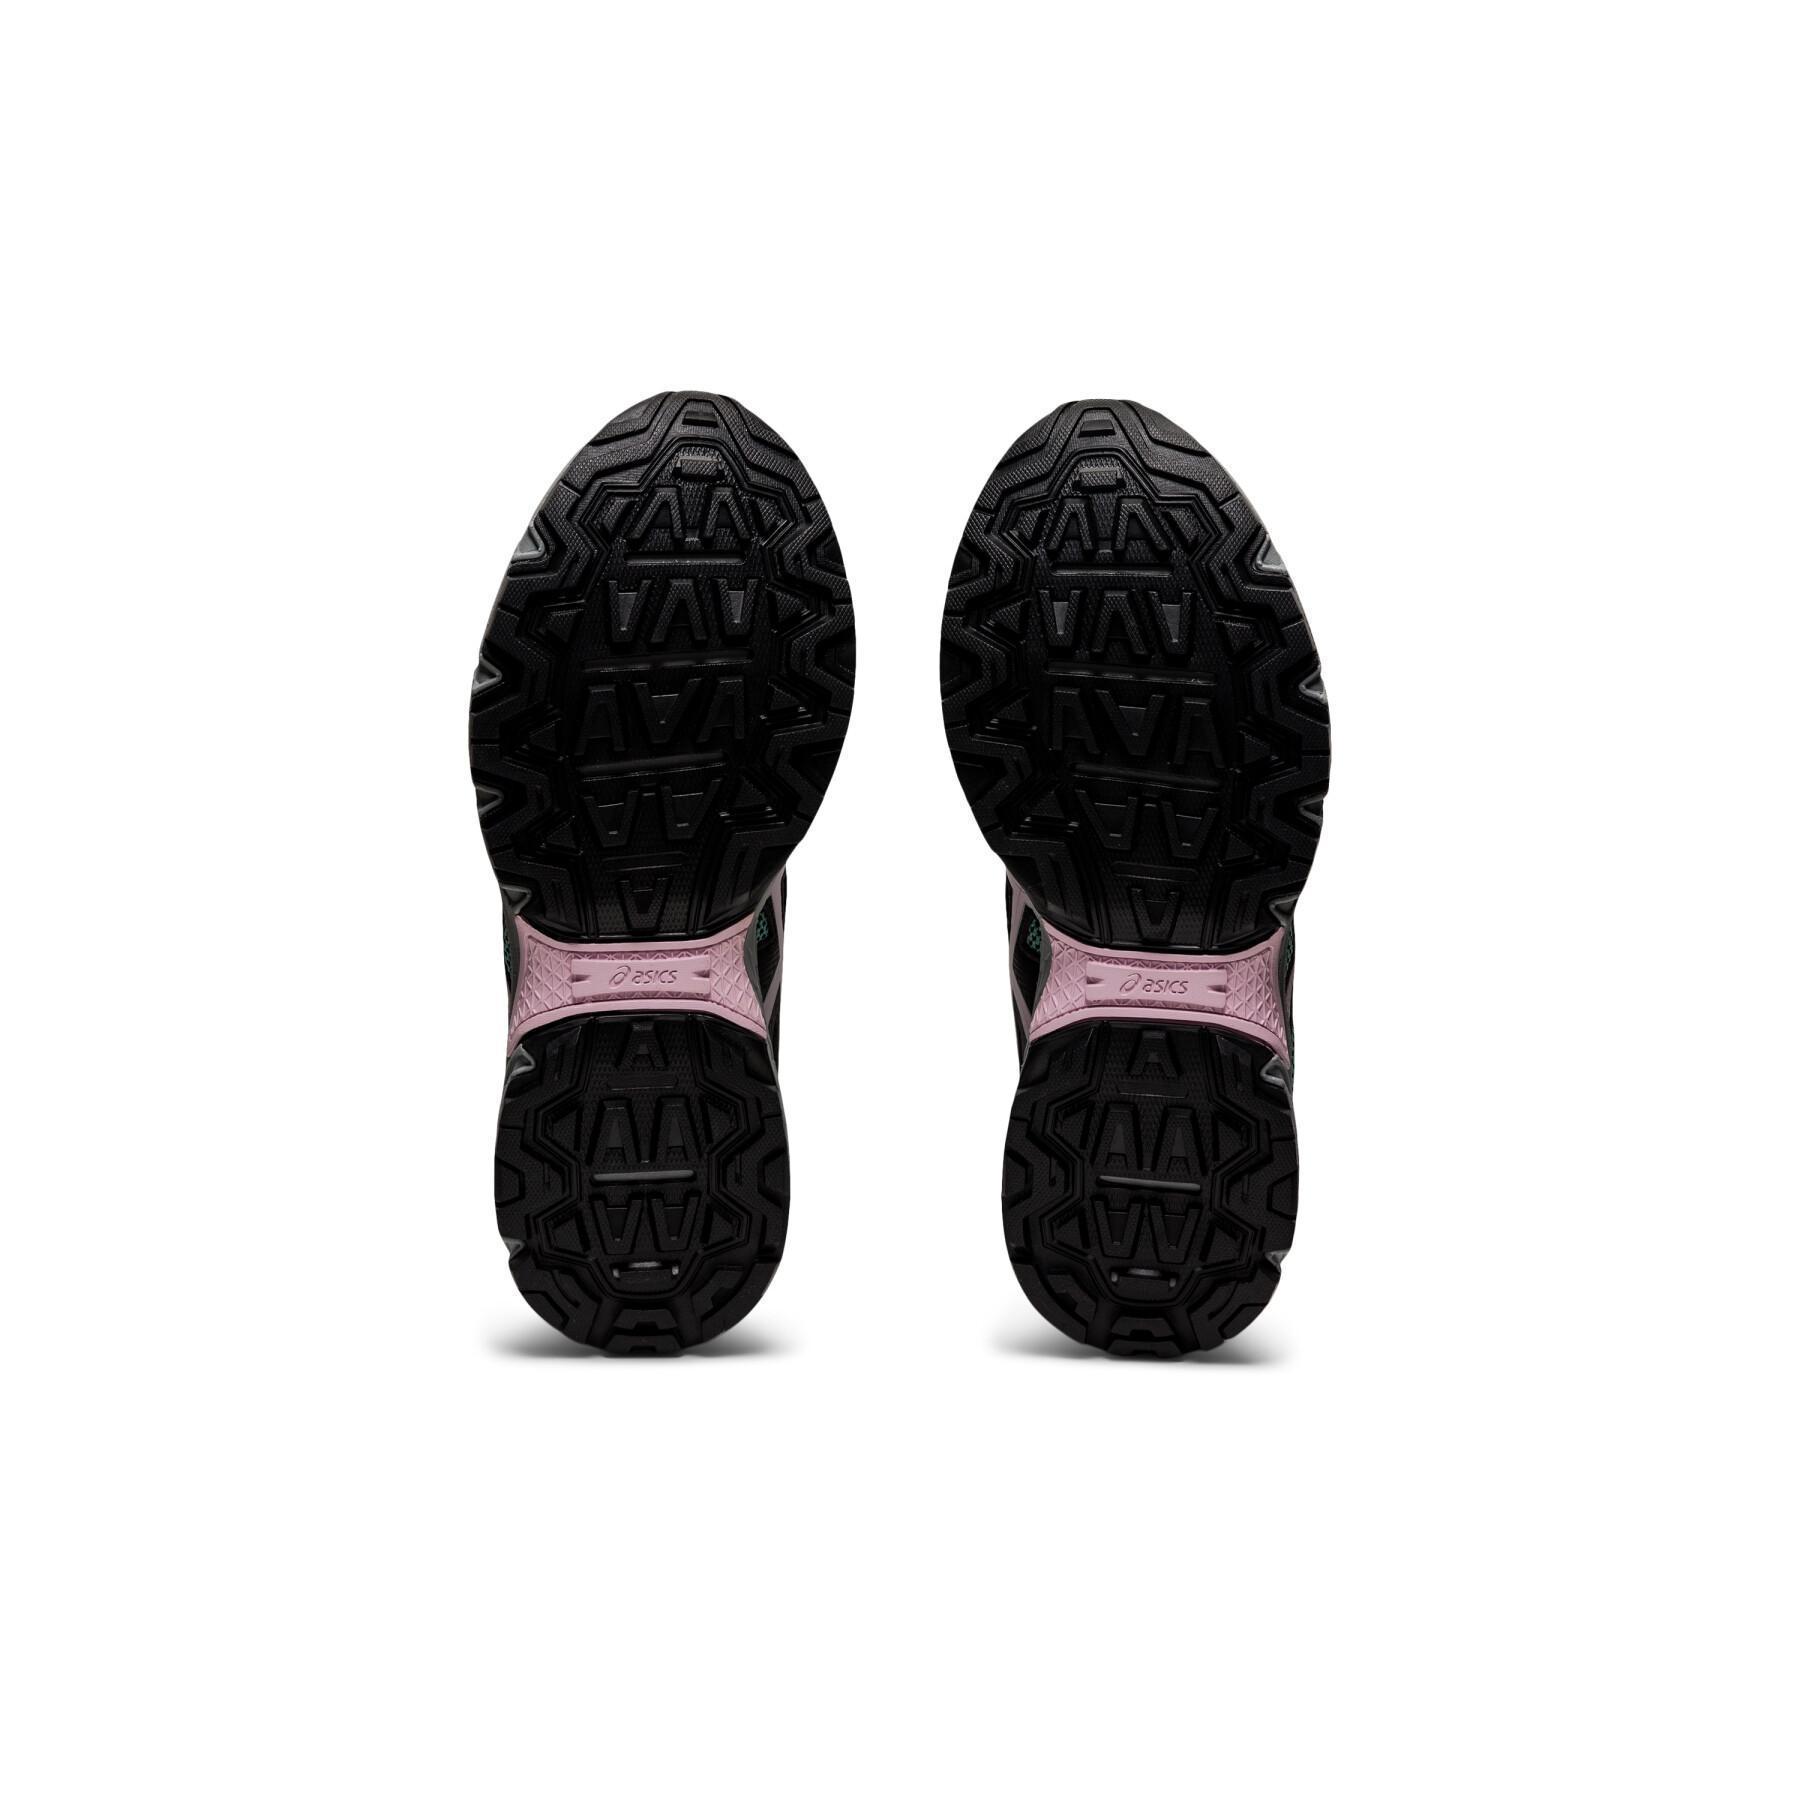 Schuhe für Frauen Asics Gel-Venture 8